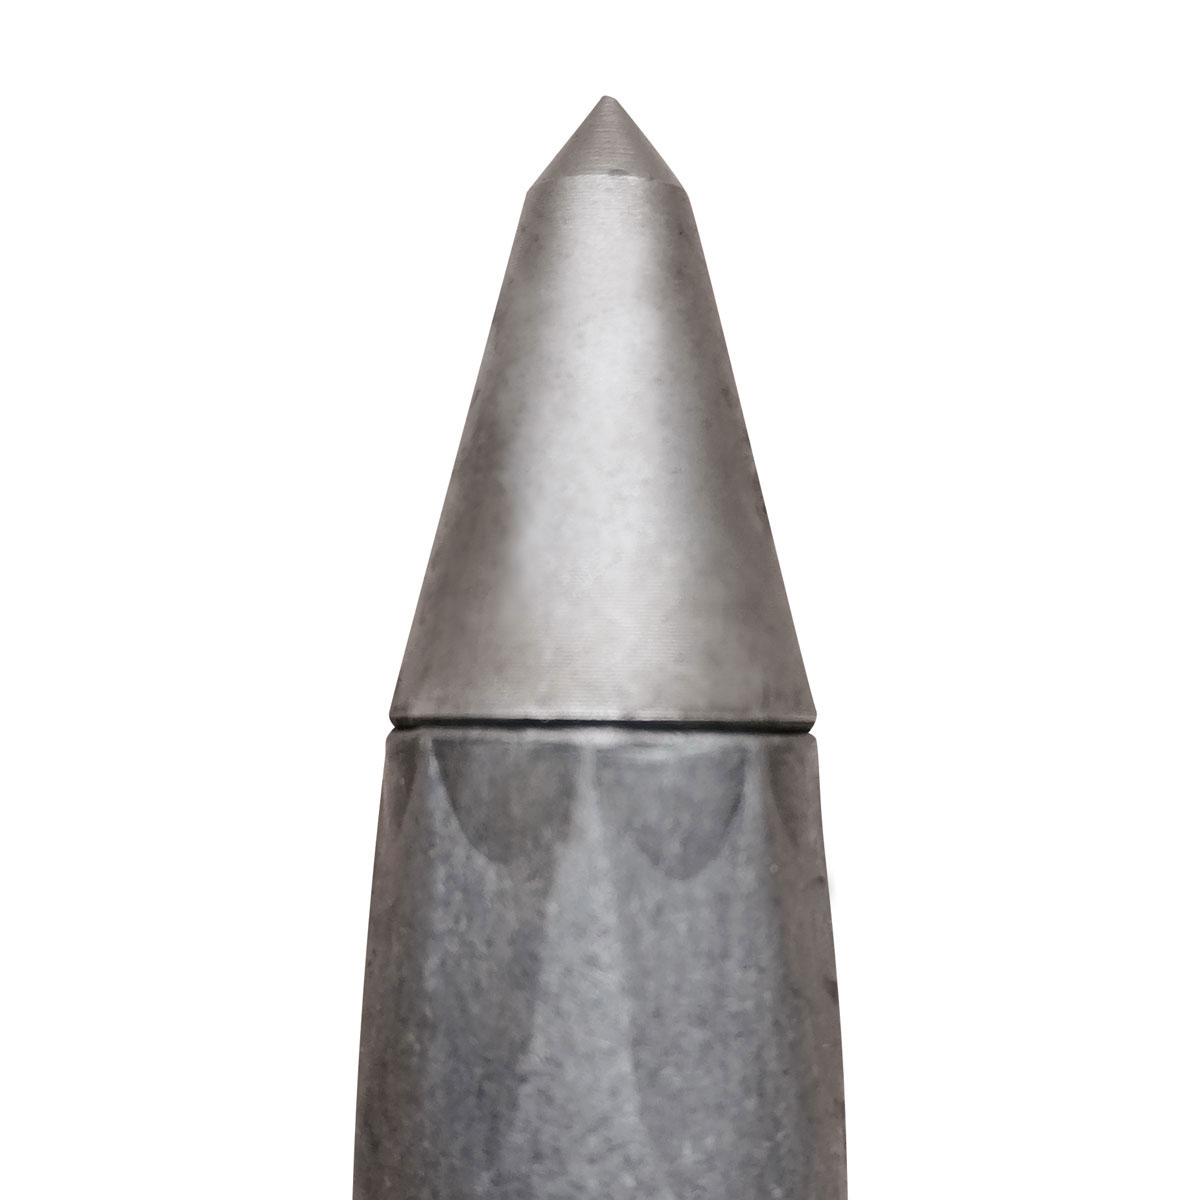 Eisenvermessungsrohre 3/8" - Länge 250 mm mit Stahlspitze